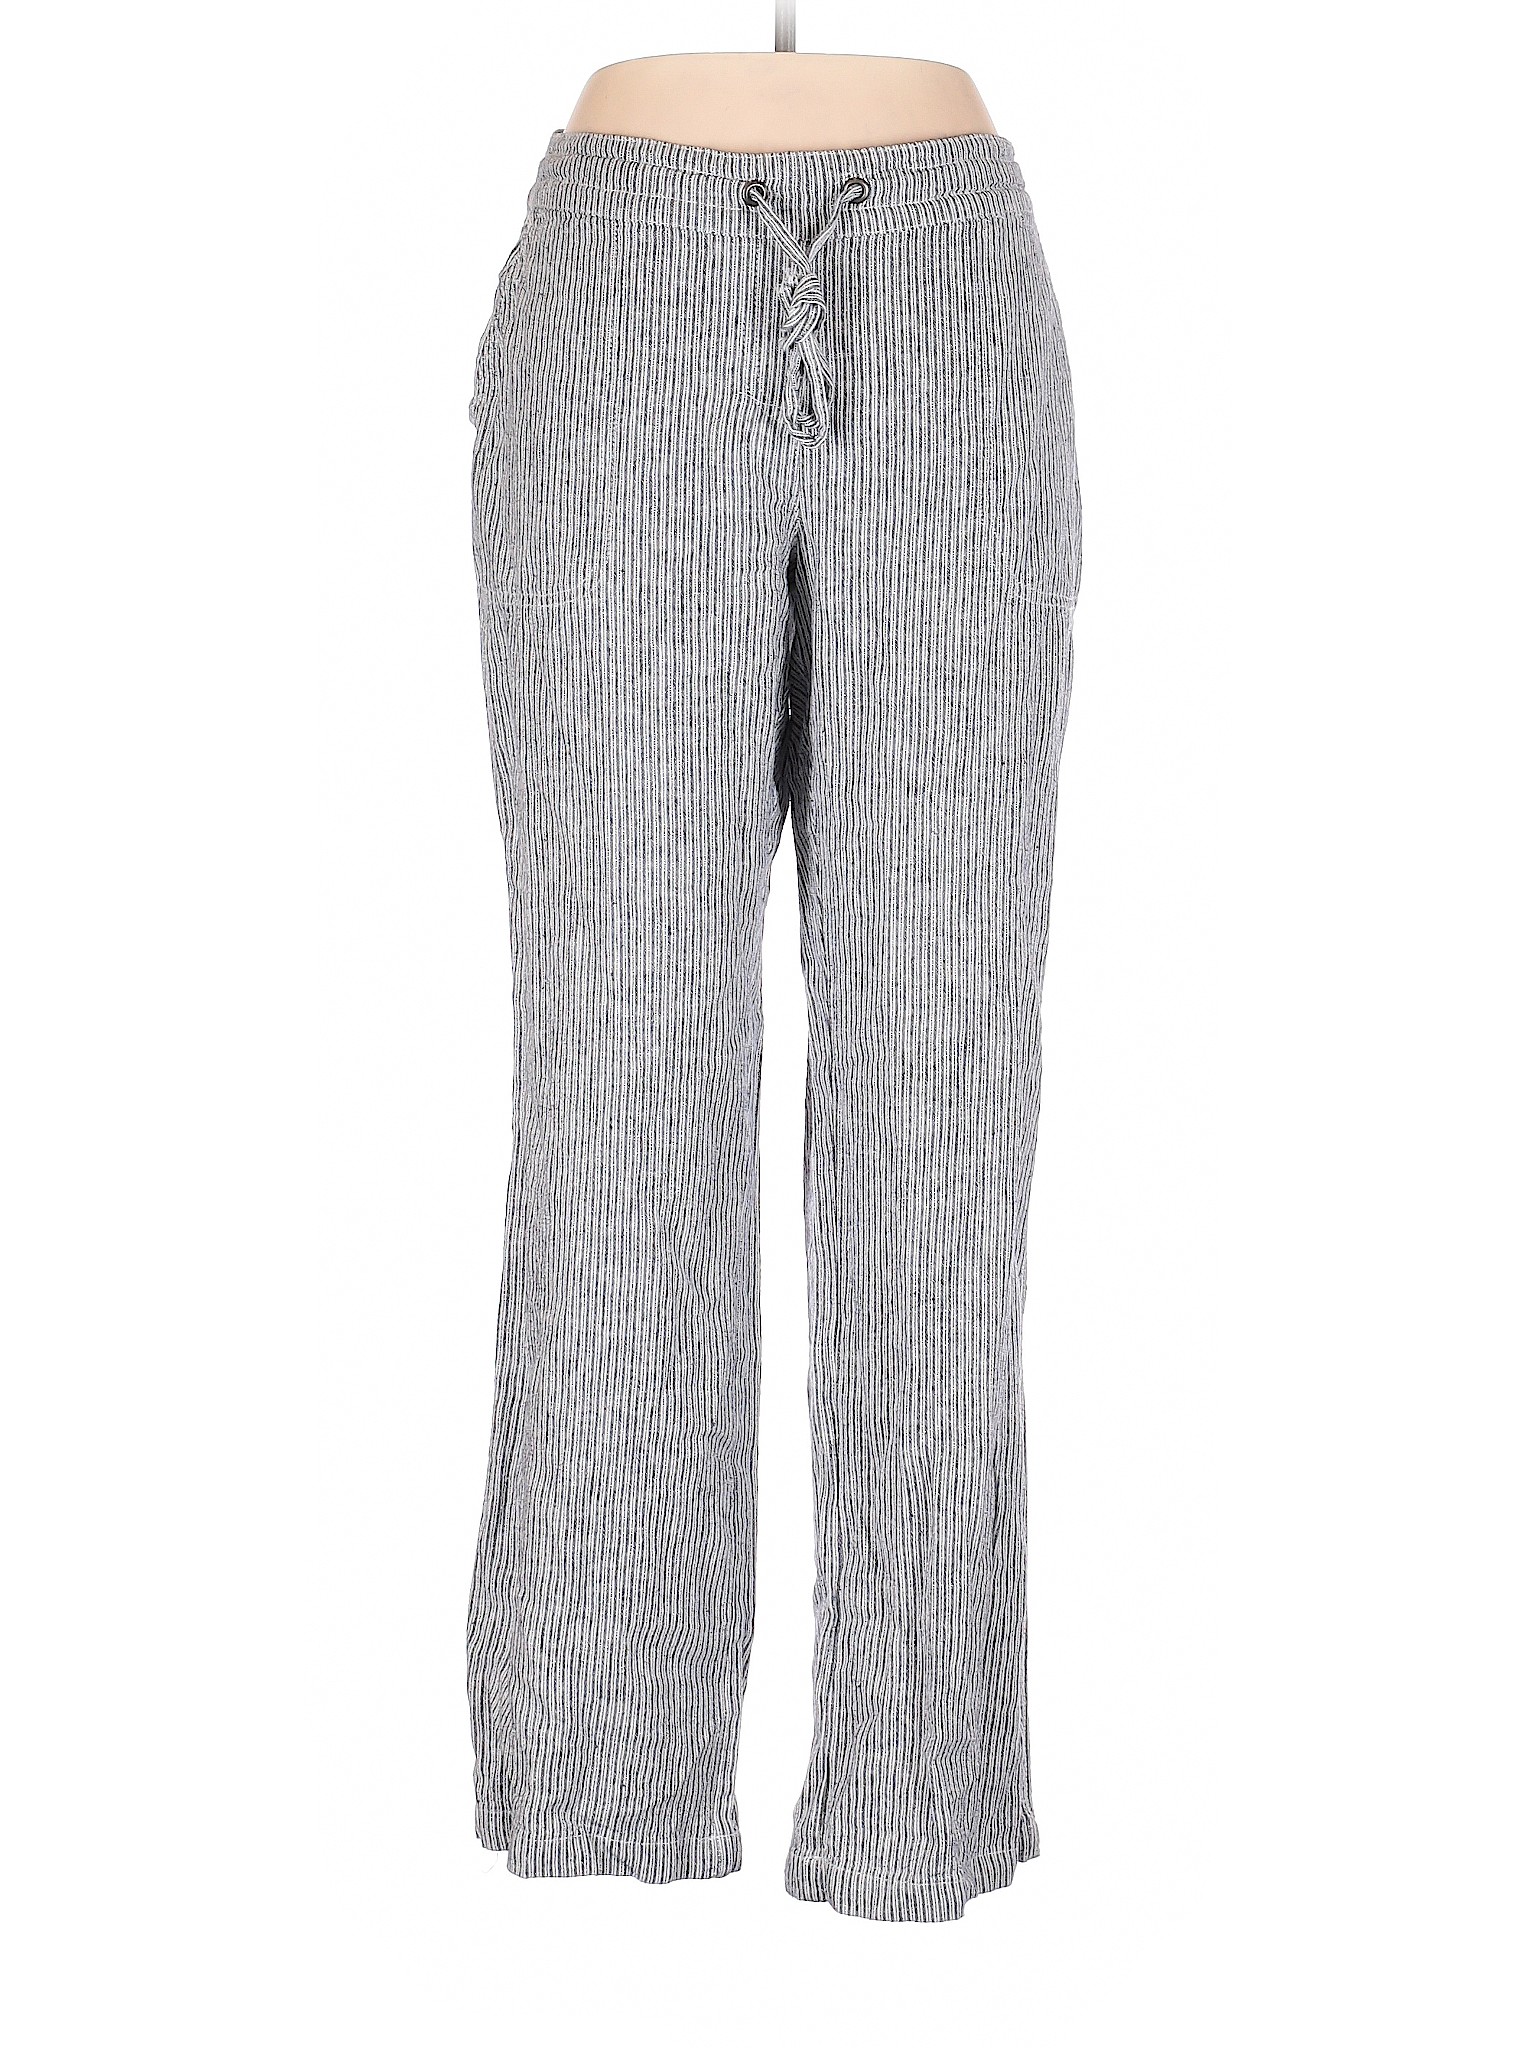 Per Se Women Gray Linen Pants L | eBay